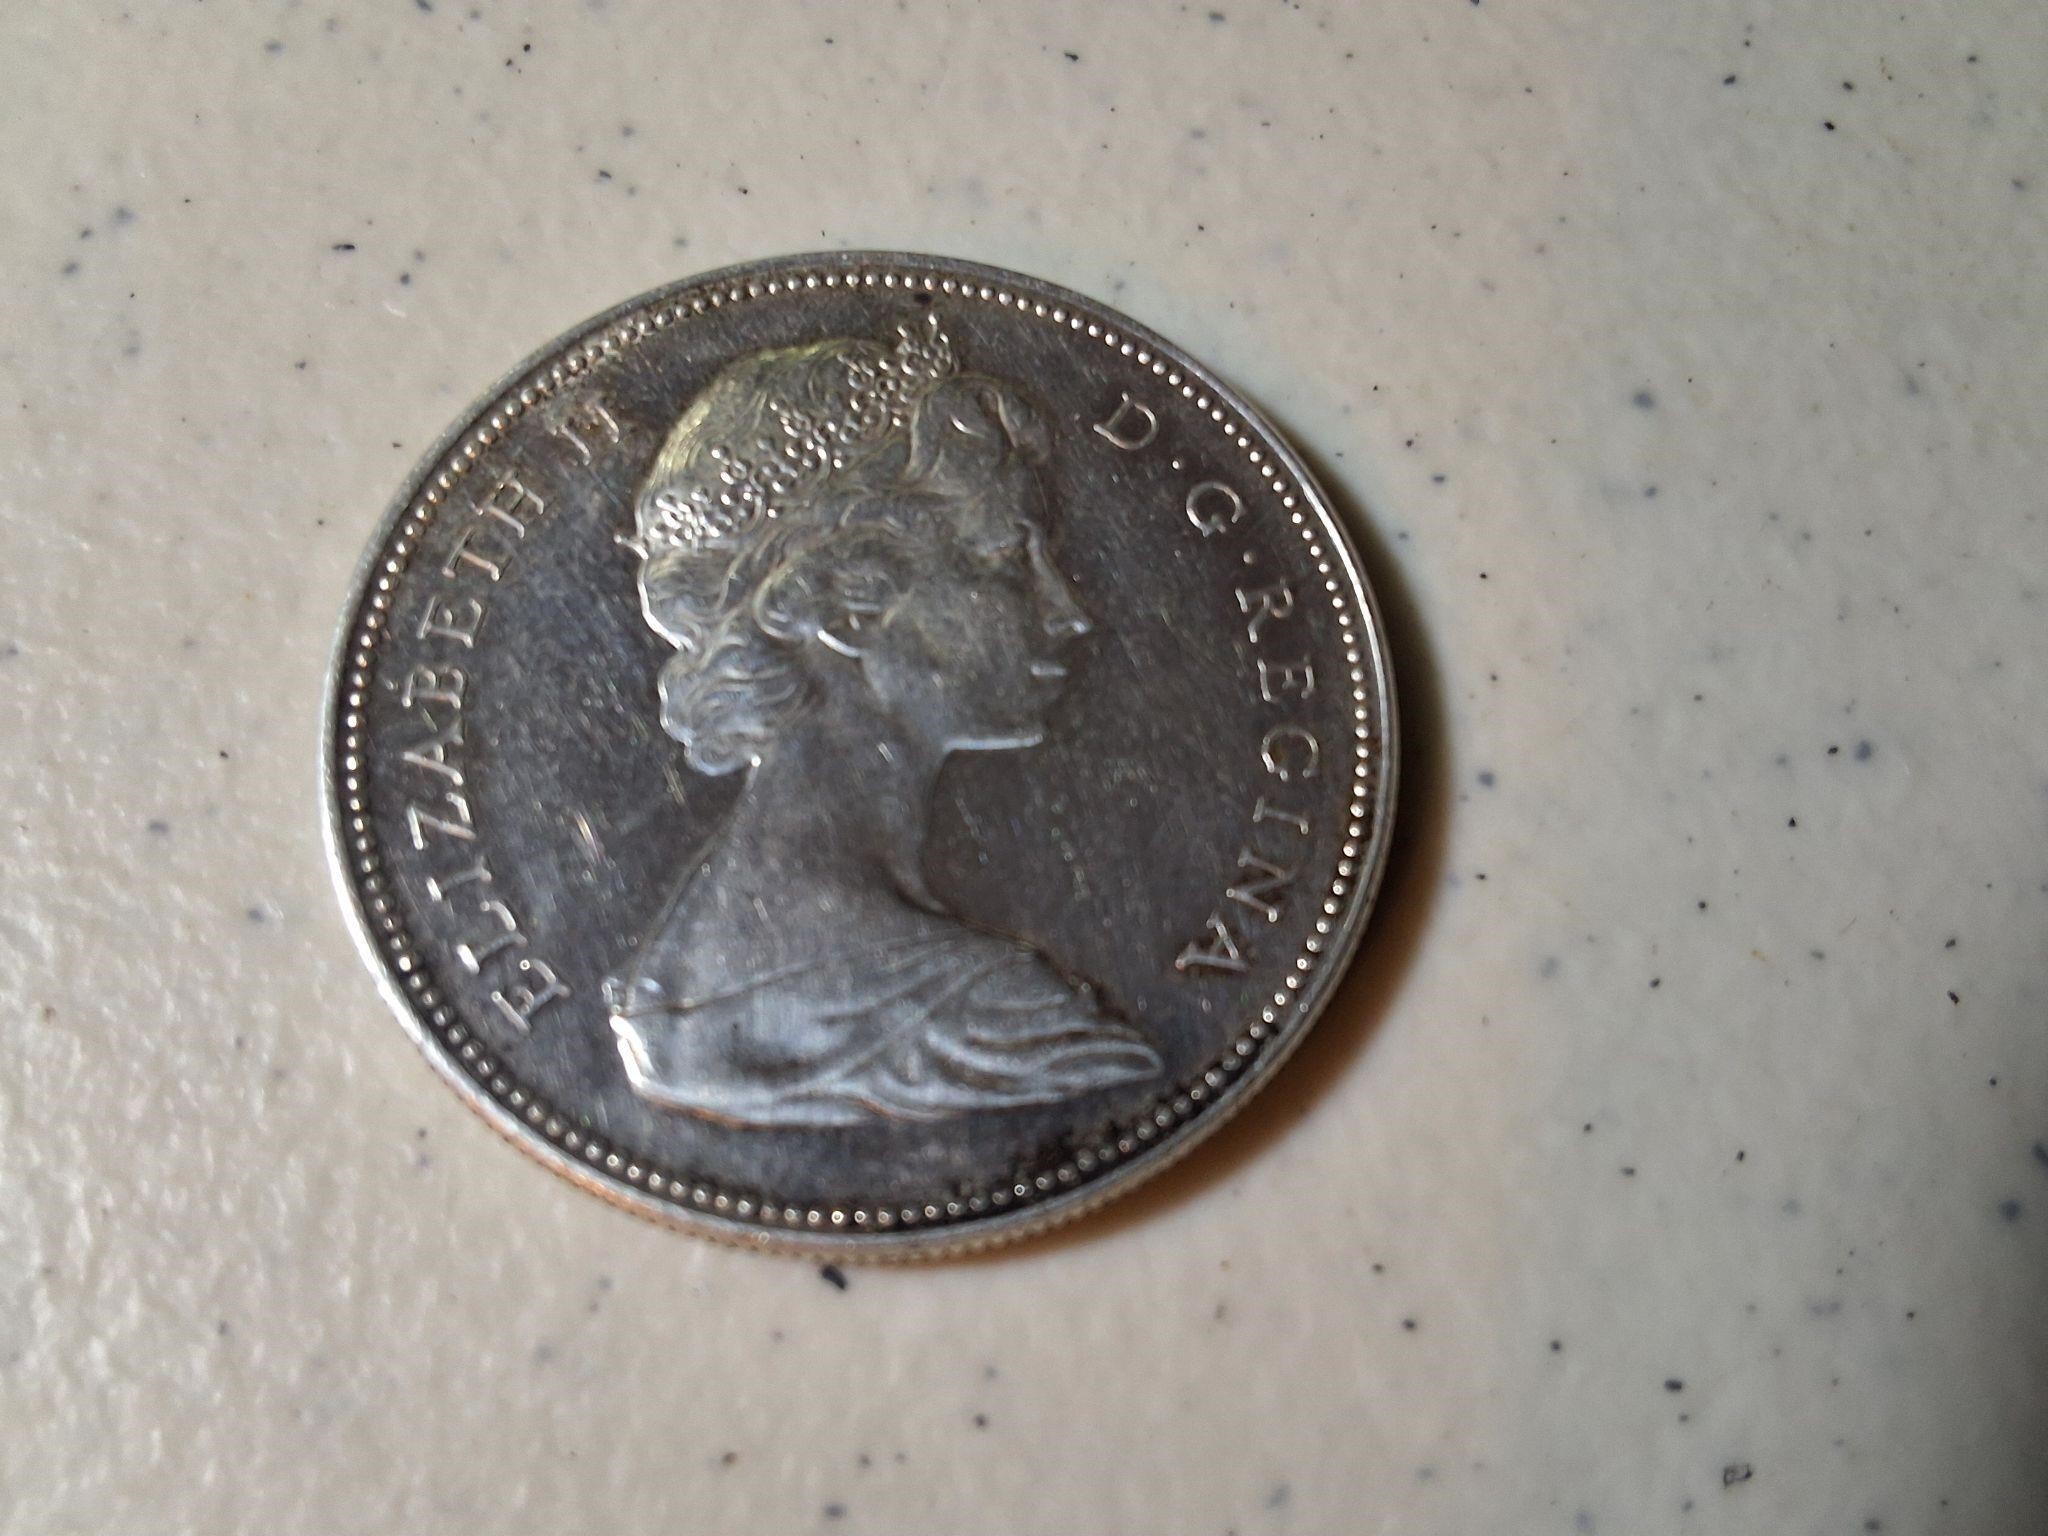 1965 Canada dollar